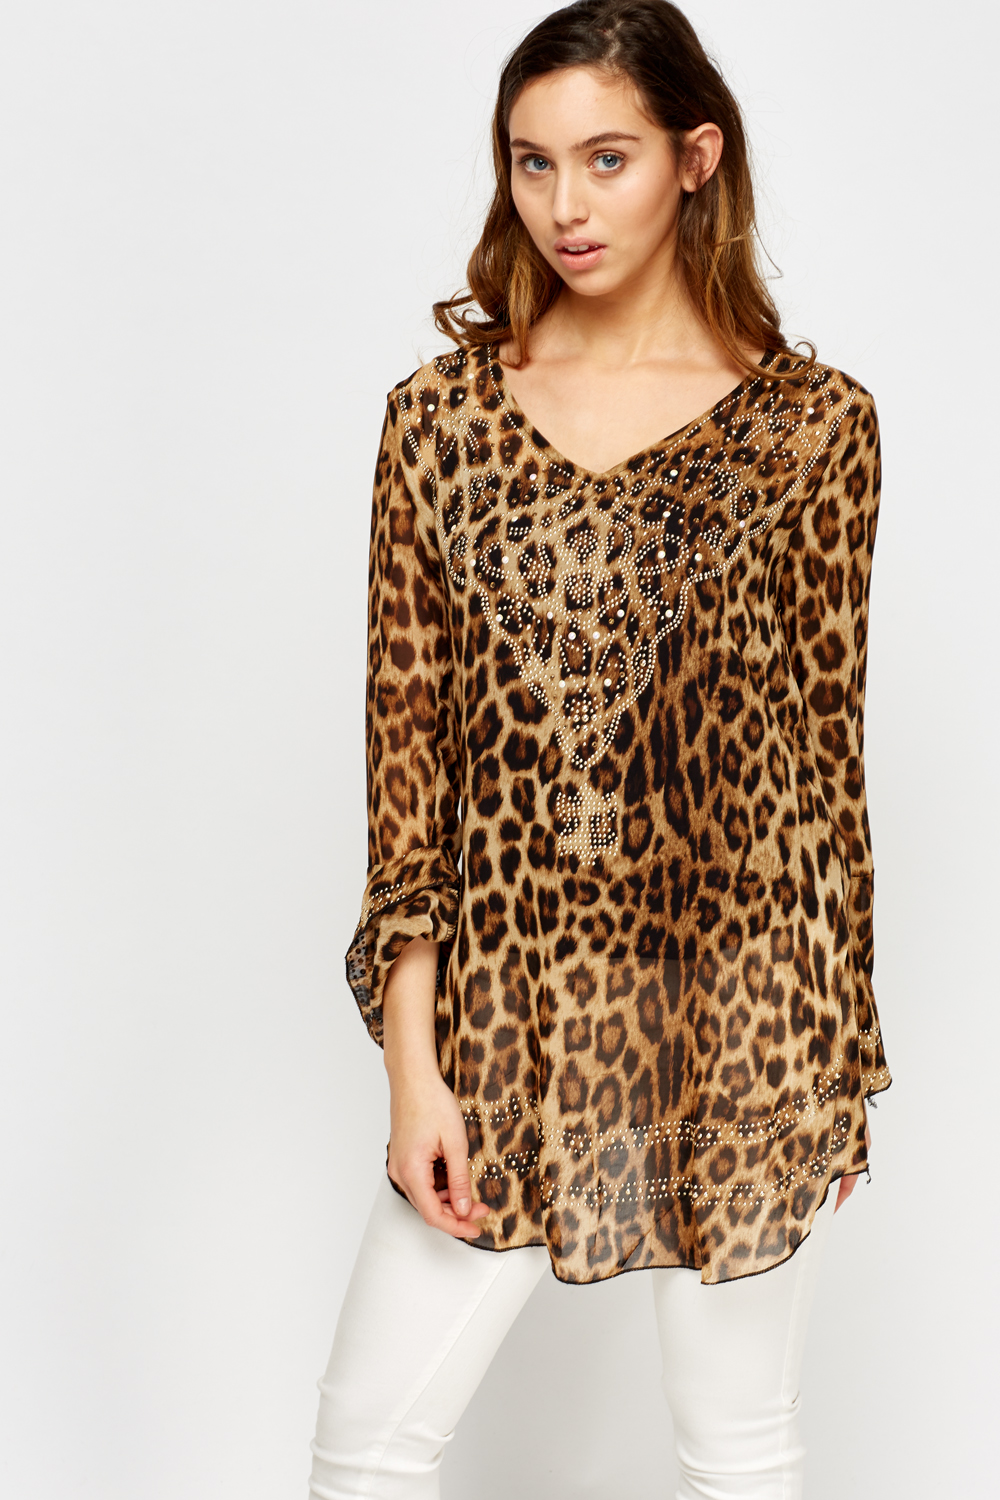 Leopard Print Embellished Sheer Top - Just $7